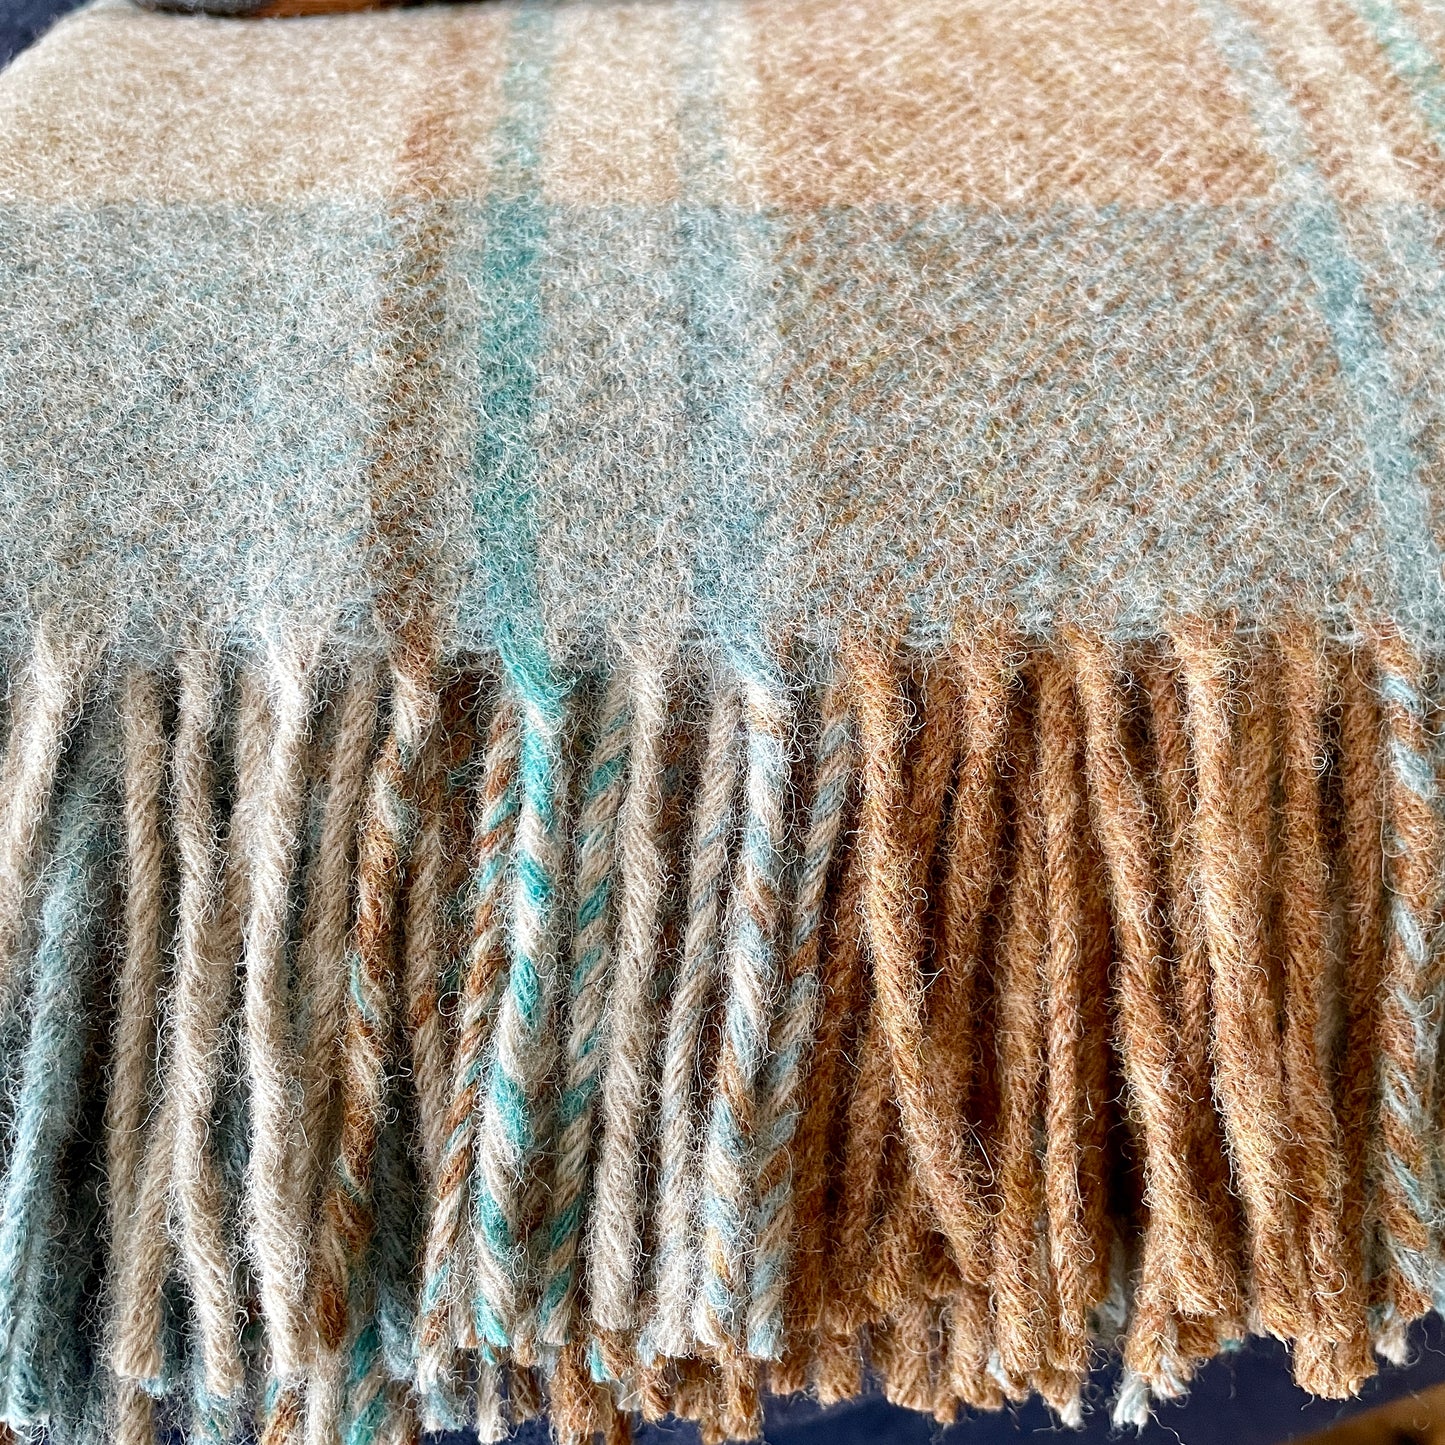 Woollen blanket